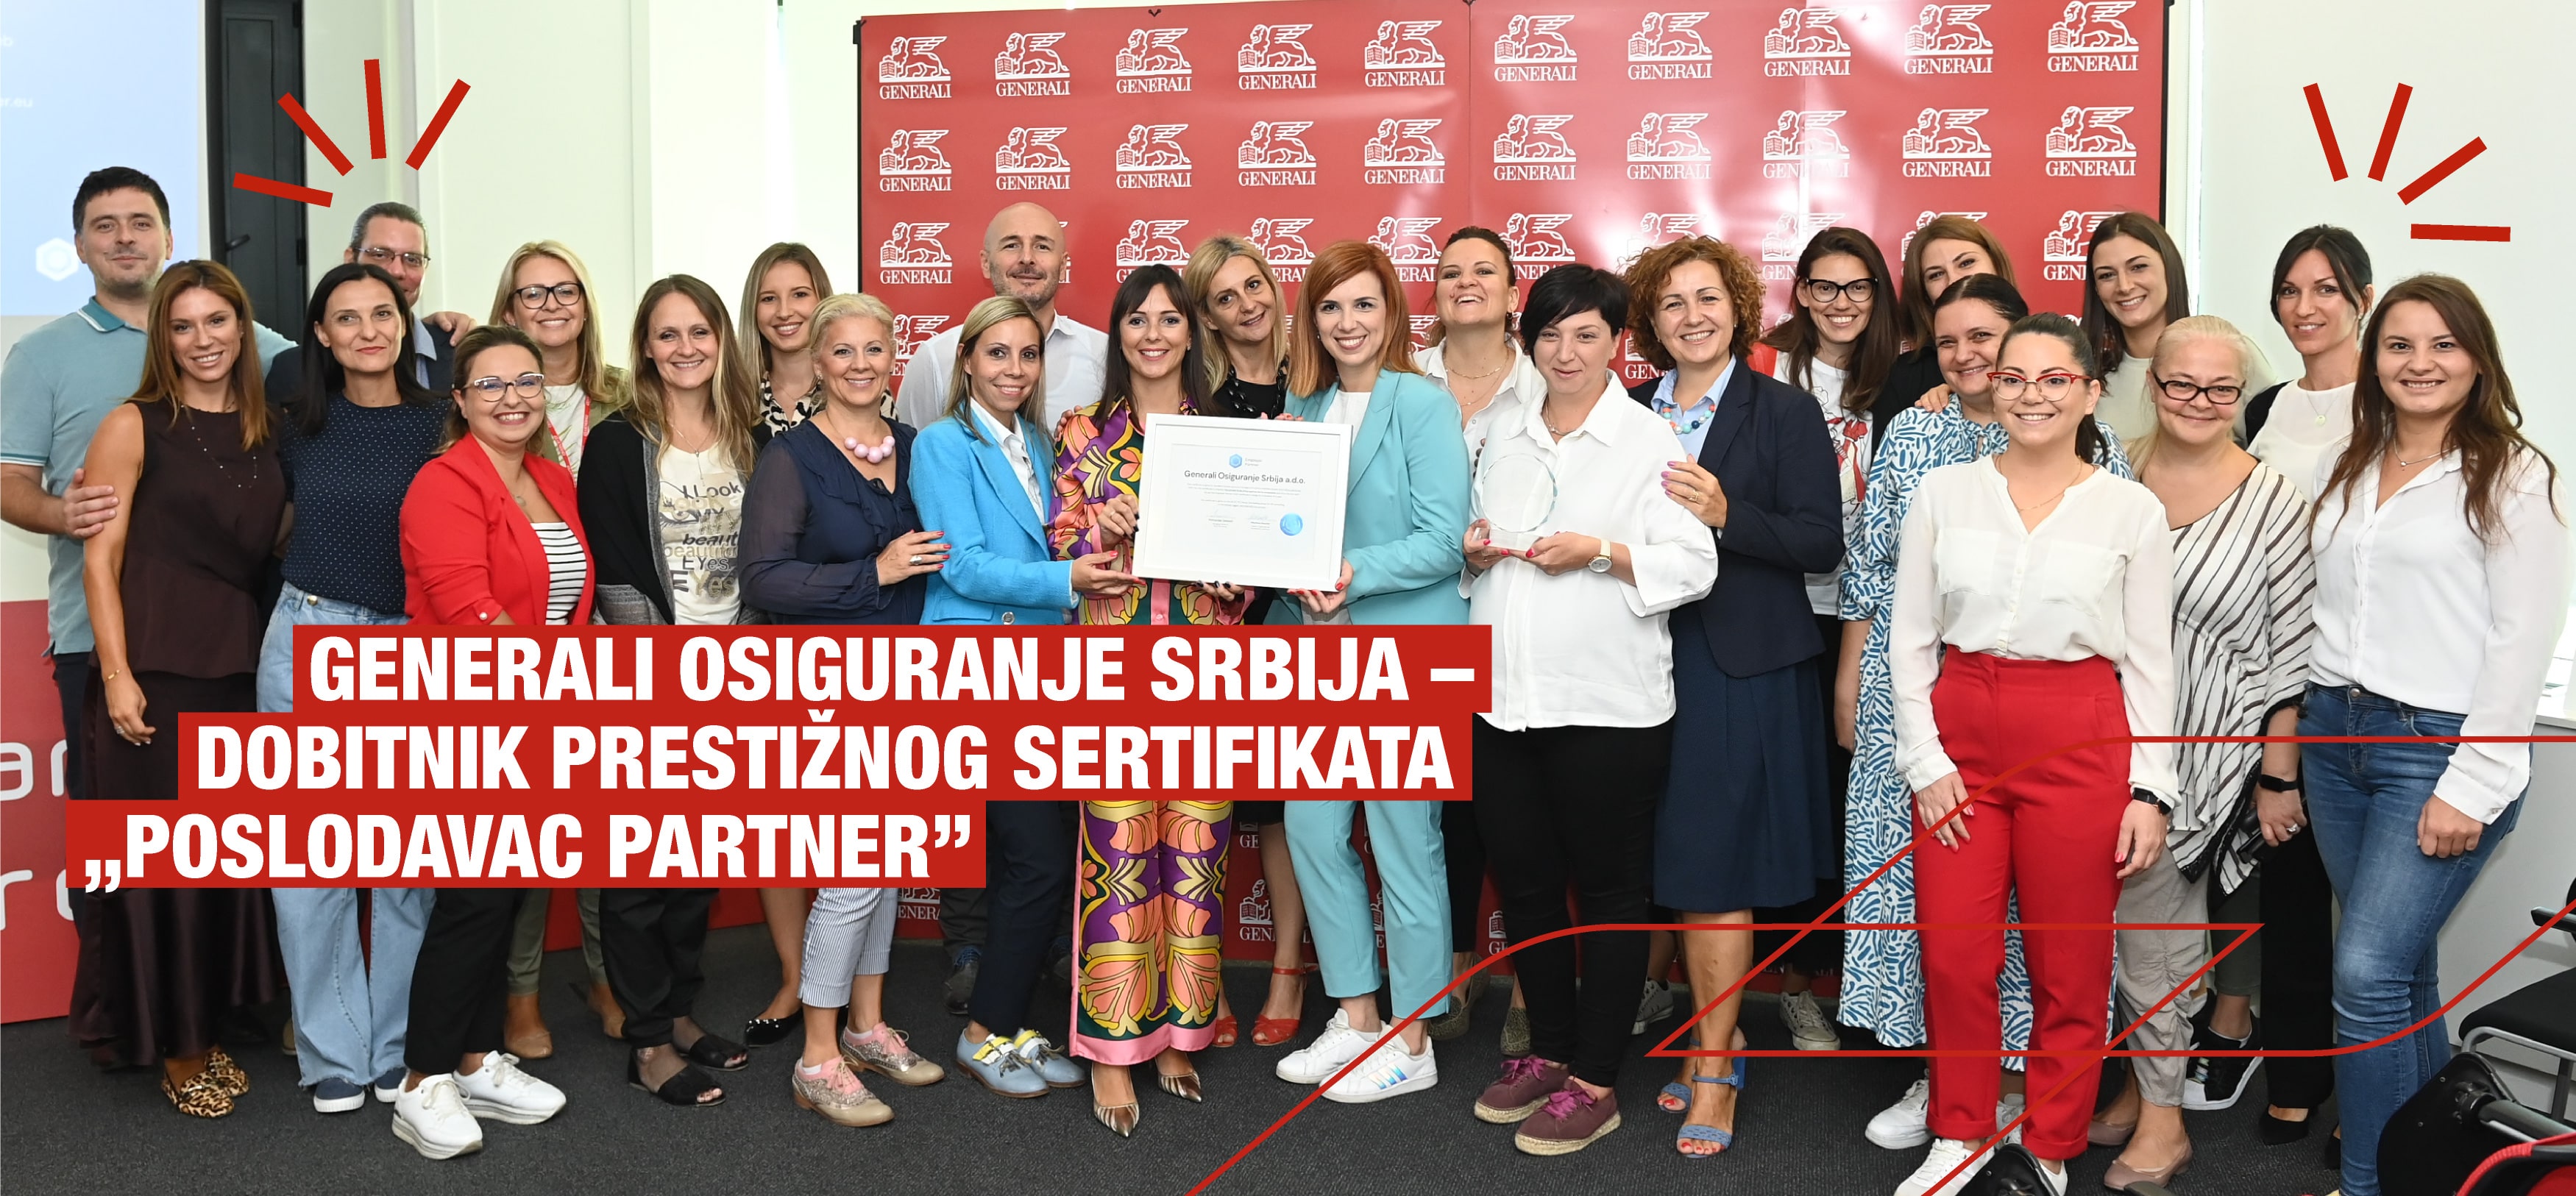 Generali Osiguranje Srbija – dobitnik prestižnog sertifikata „Poslodavac partner“